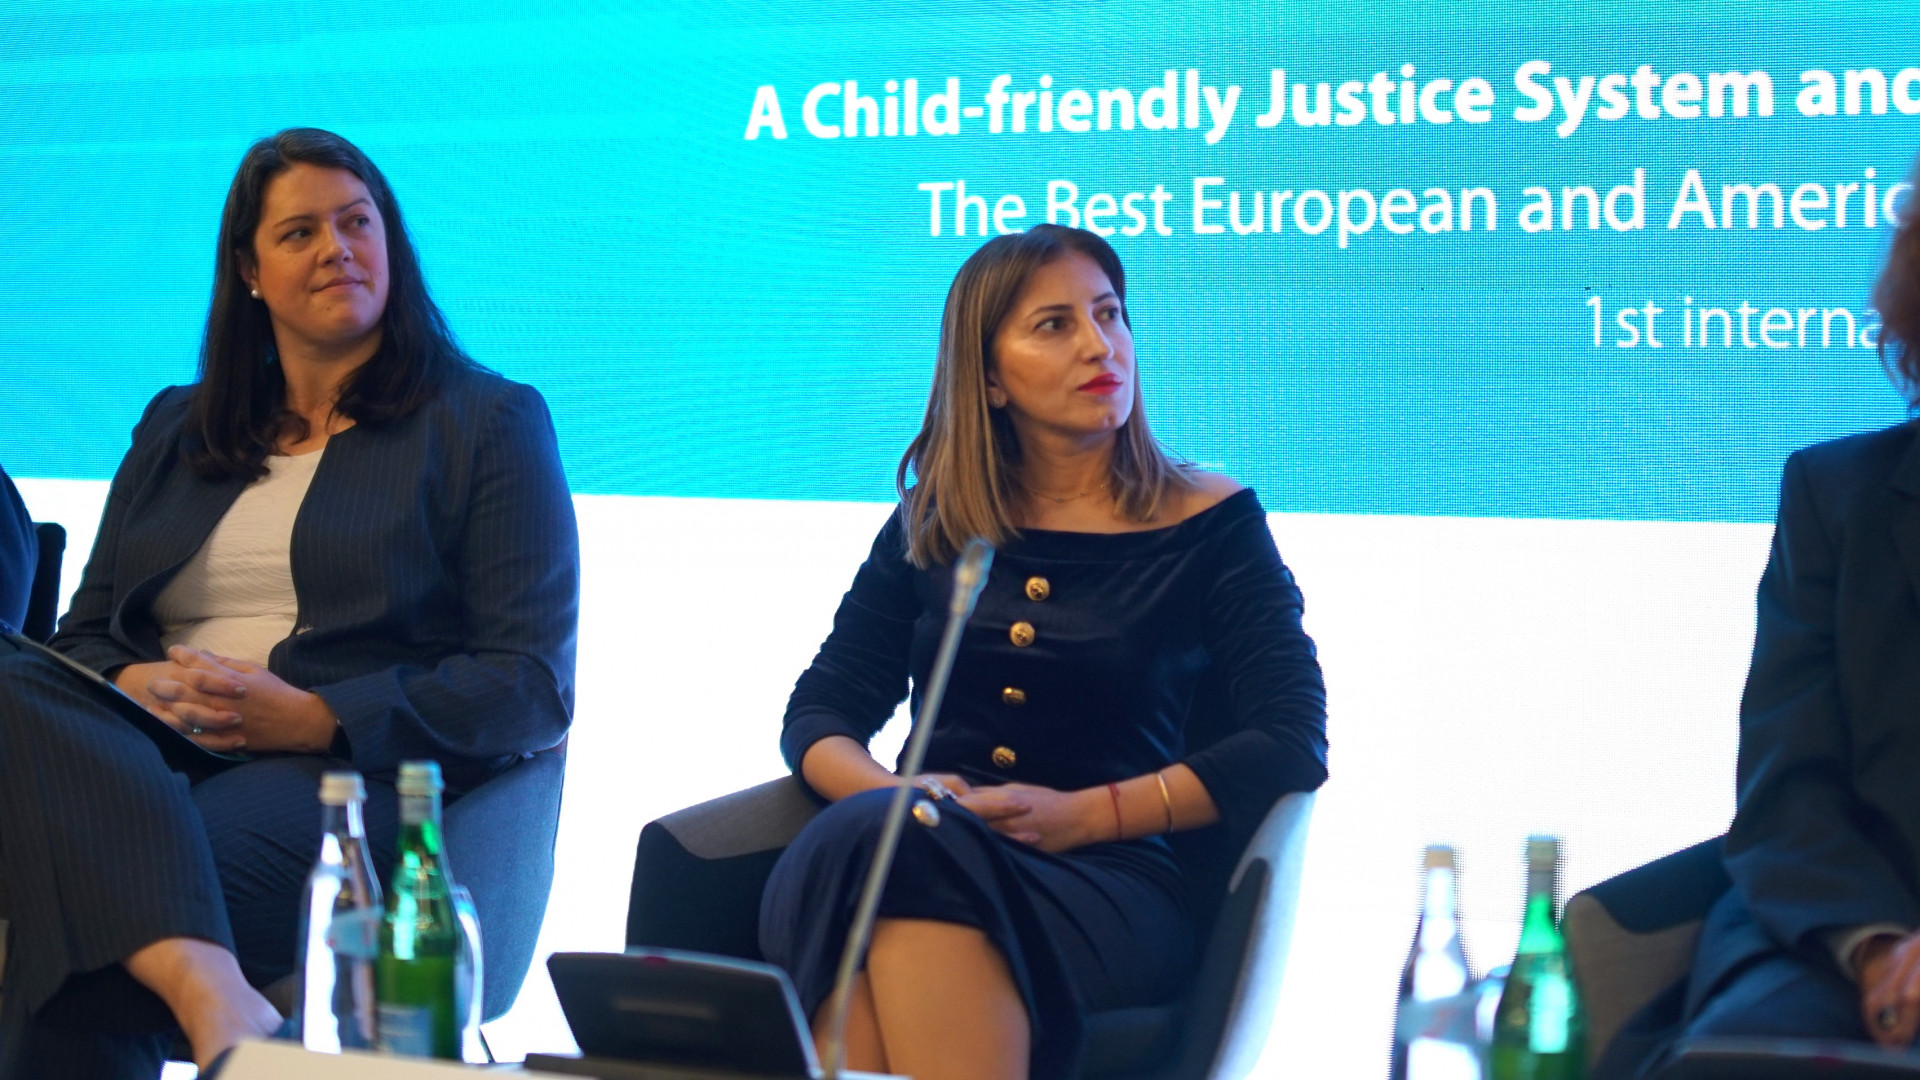 პირველი საერთაშორისო კონფერენცია -„ბავშვზე მორგებული მართლმსაჯულების სისტემა და ბავშვის უფლებები - საუკეთესო ევროპული და ამერიკული გამოცდილება“